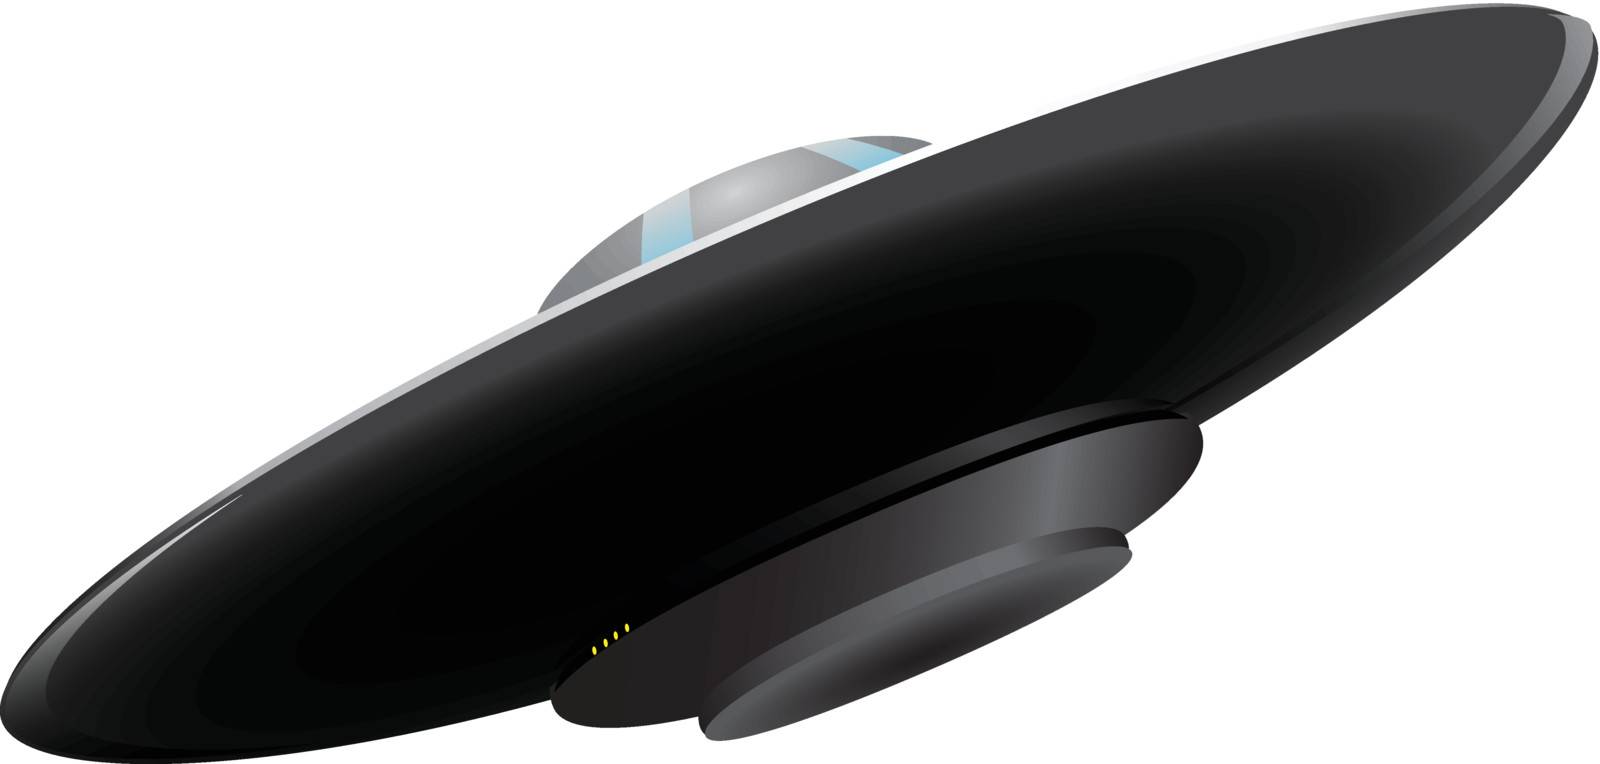 A flying saucer alien transport ship. Vector illustration.